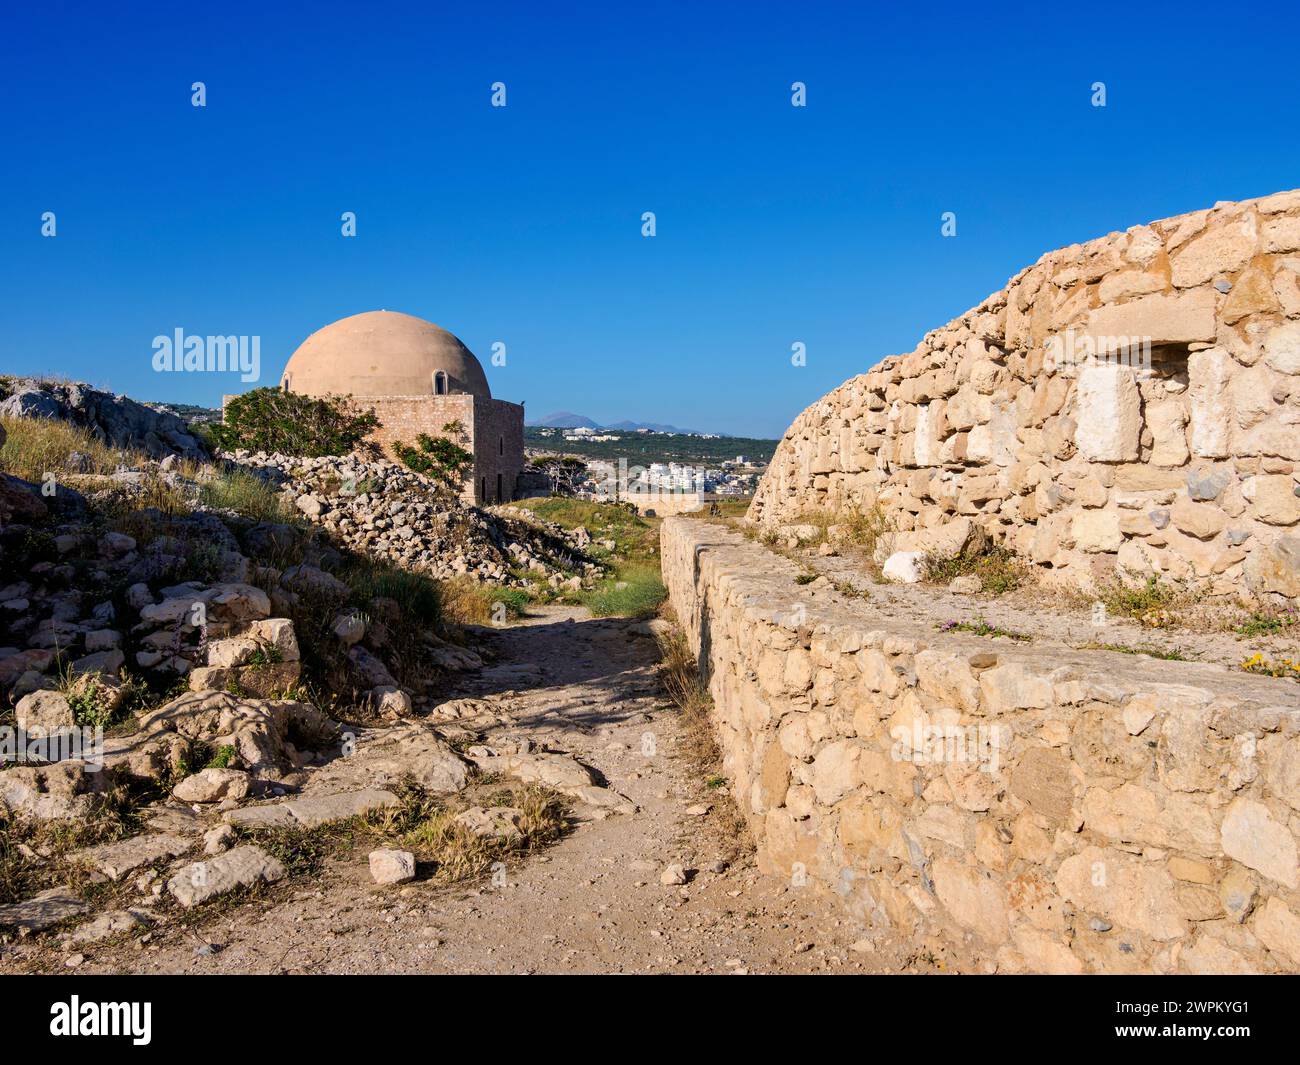 Vue vers la mosquée Ibrahim Han, château vénitien Fortezza, ville de Réthymnon, région de Réthymnon, Crète, îles grecques, Grèce, Europe Banque D'Images